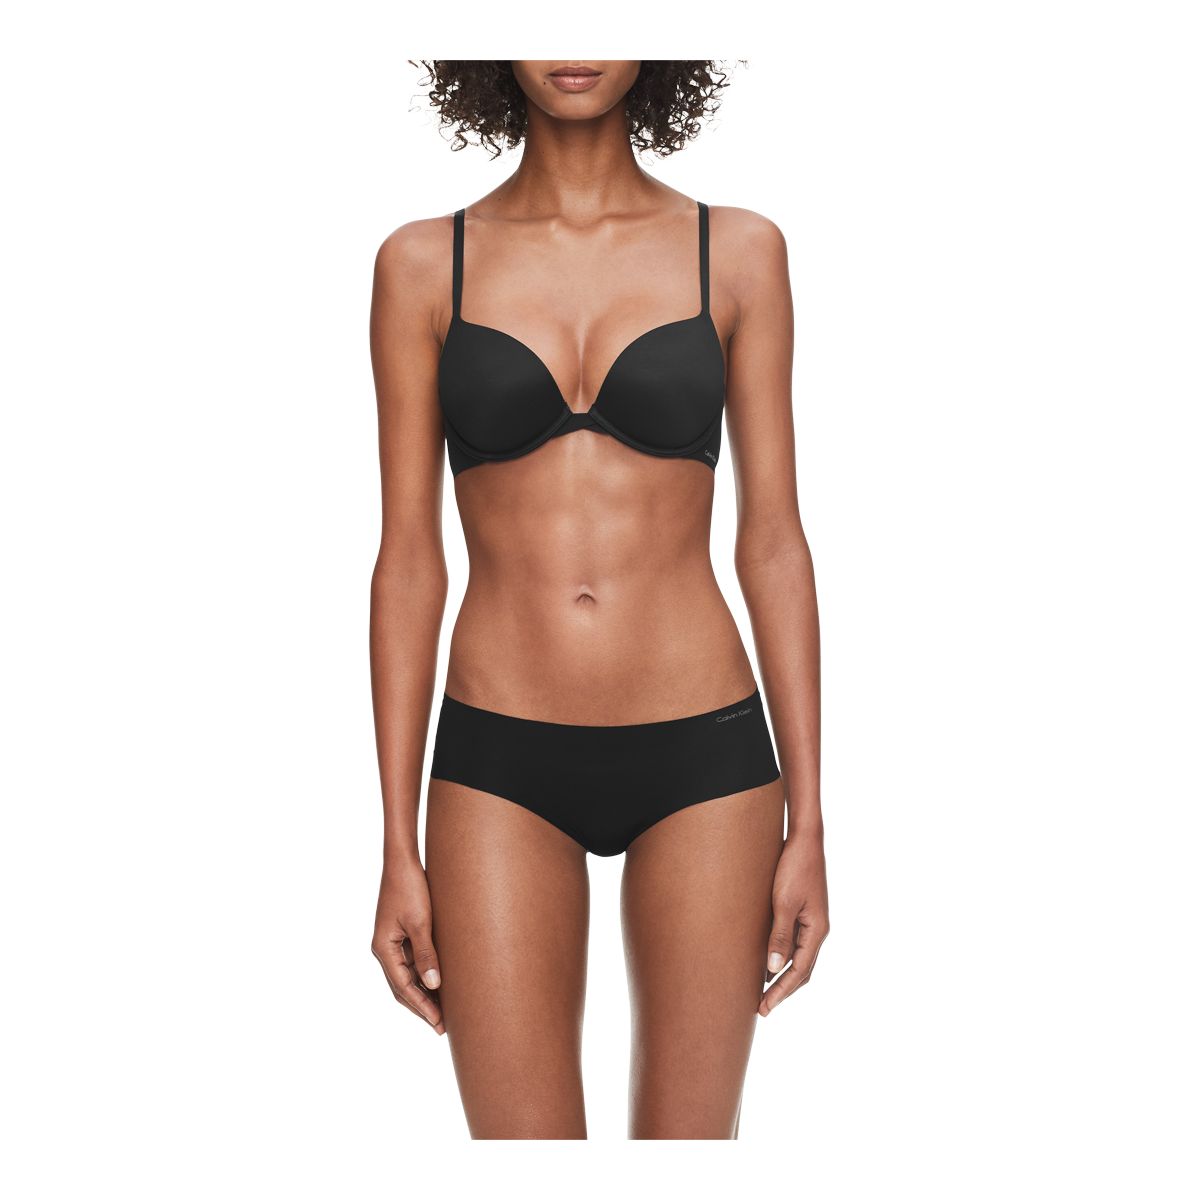 detaljer ly Hurtig Calvin Klein Women's Invisible Hipster Underwear | Bayshore Shopping Centre